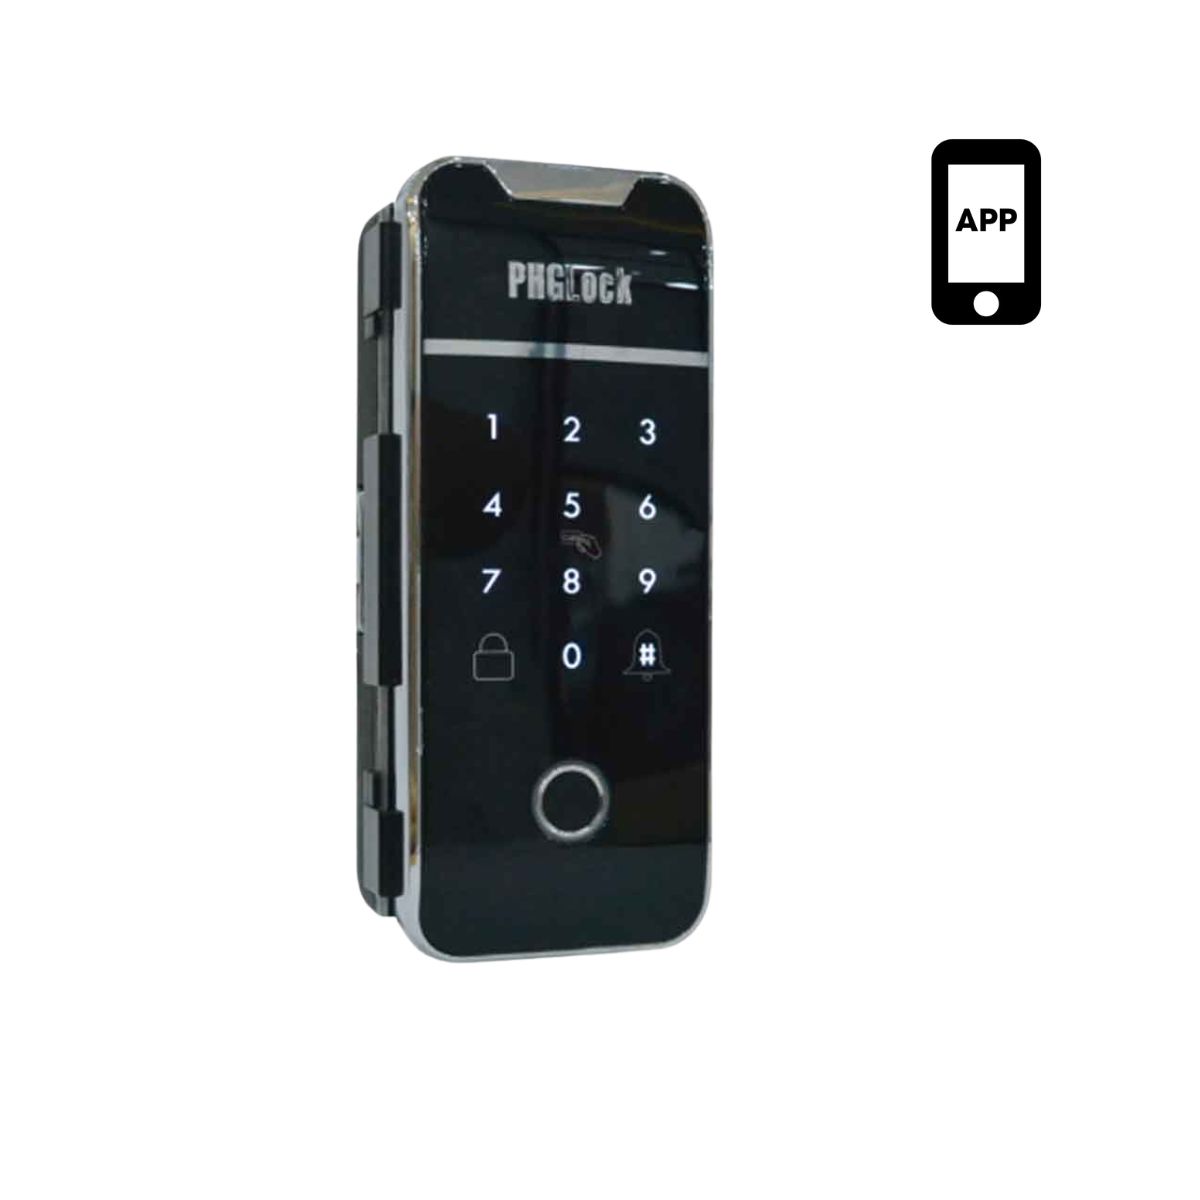 Khóa vân tay cho cửa kính lùa hoặc đẩy PHGLock FG6001 mở khóa bằng APP 200 thẻ MI, 150 mật mã, 150 vân tay, chìa khóa cơ 